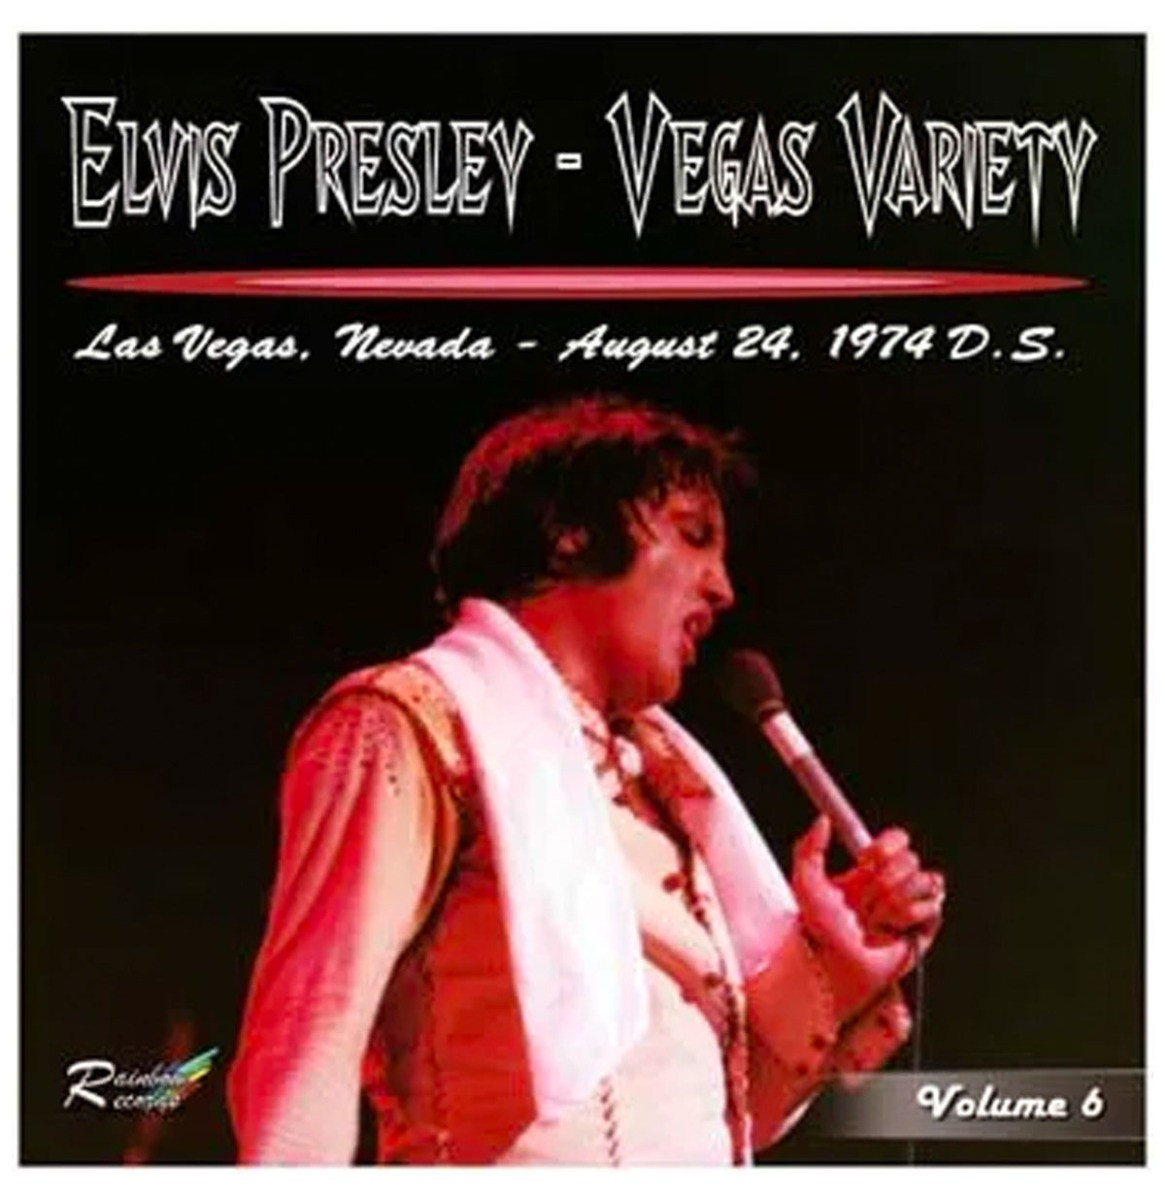 Elvis Presley - Vegas Variety Vol. 6 Las Vegas August 24 1974 CD